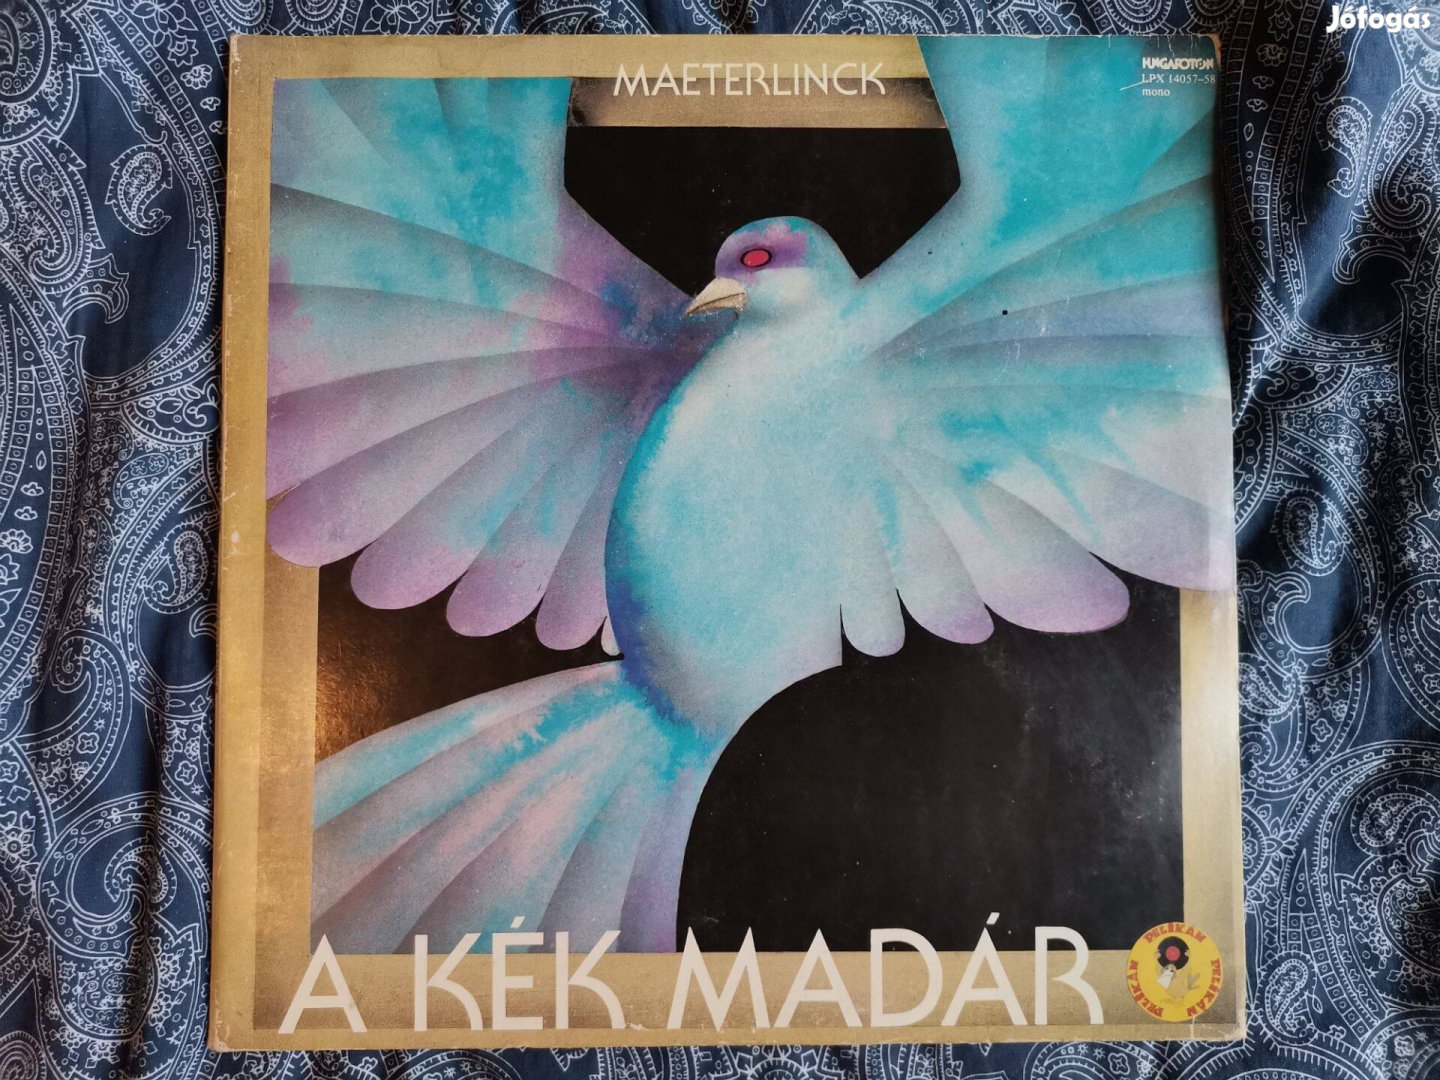 Maeterlinck - A kék madár 1987 dupla bakelit